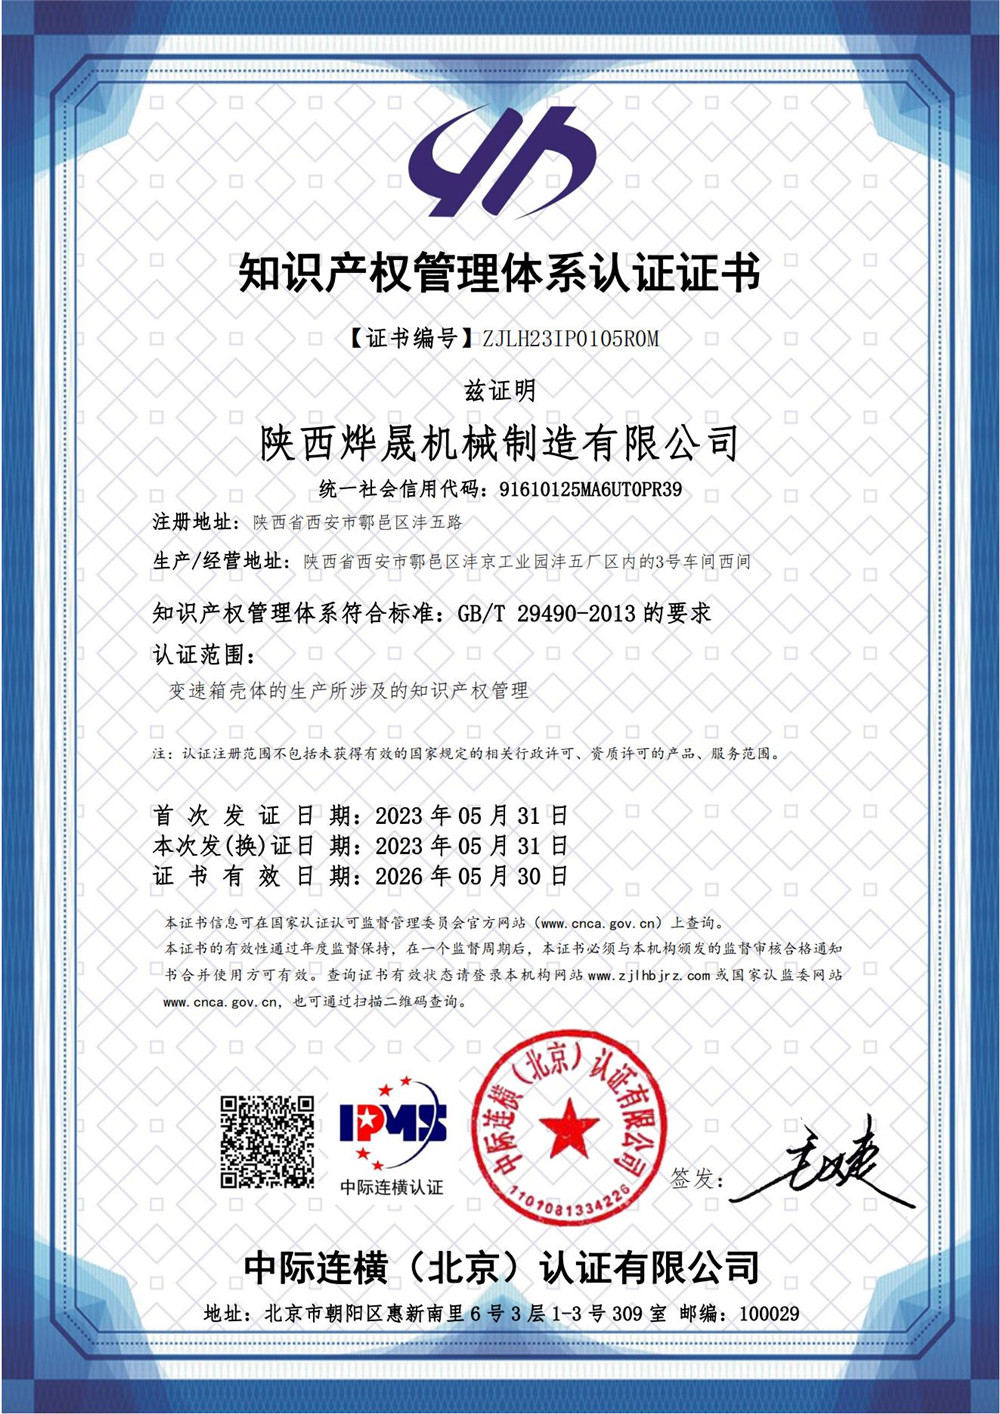 知识产权管理体系证书  IPMS证书中文